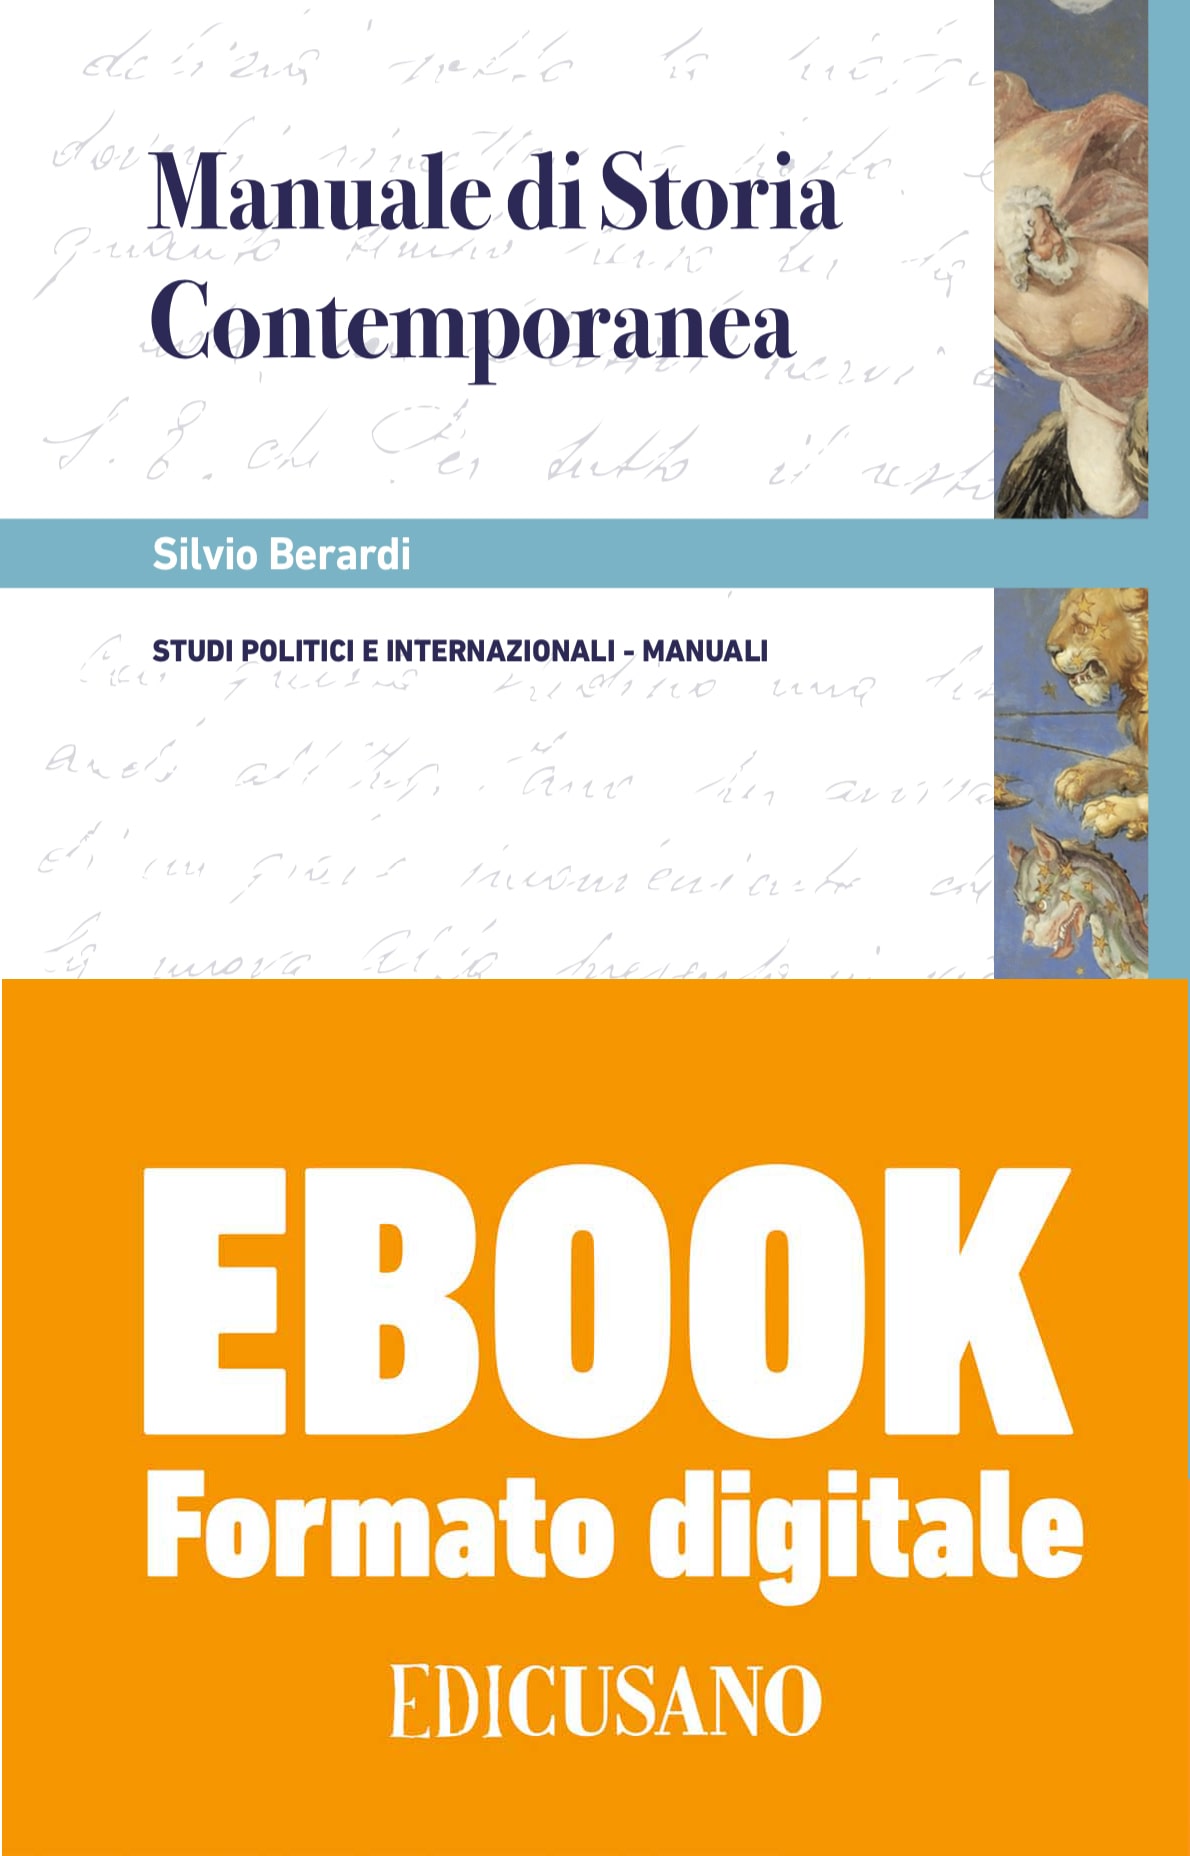 Manuale di Storia Contemporanea - (Formato Digitale). Mobi